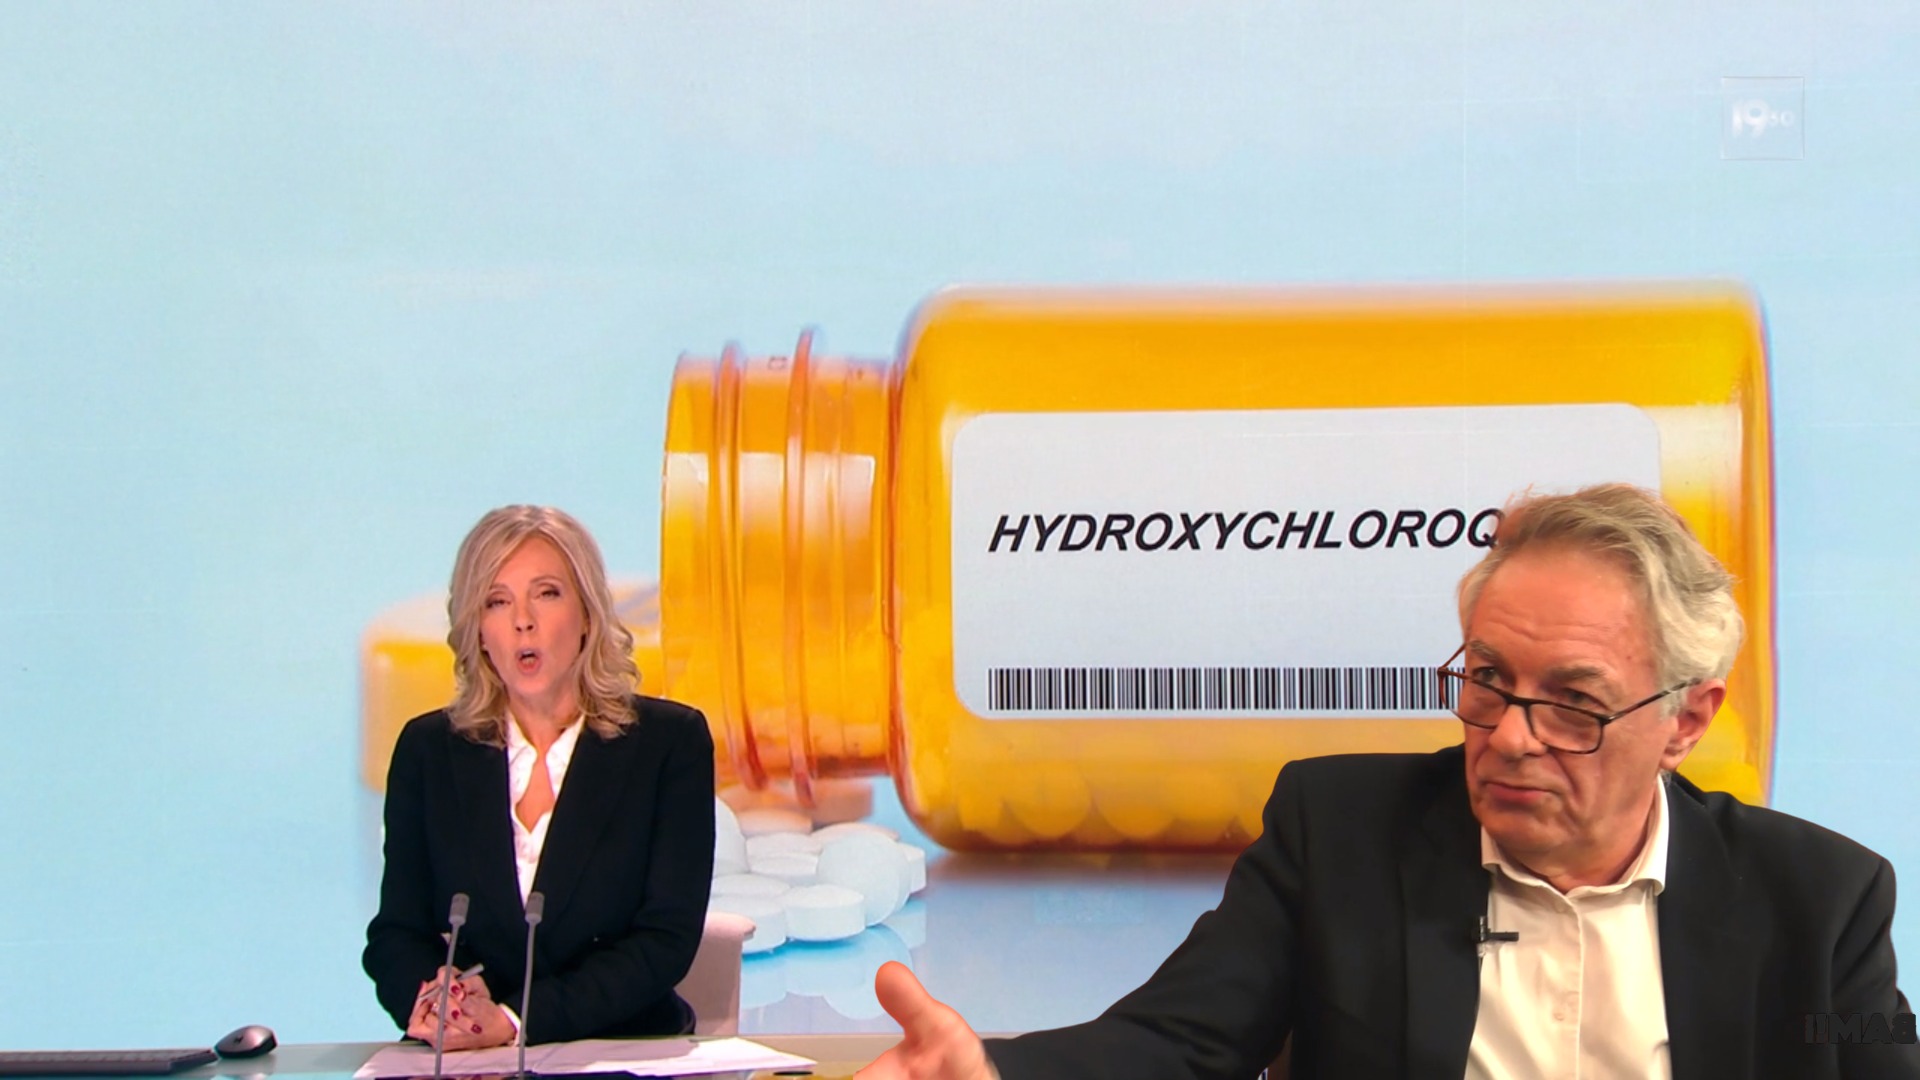 Réponse du Dr Colignon sur l’étude attribuant 17000 décès à l'hydroxychloroquine